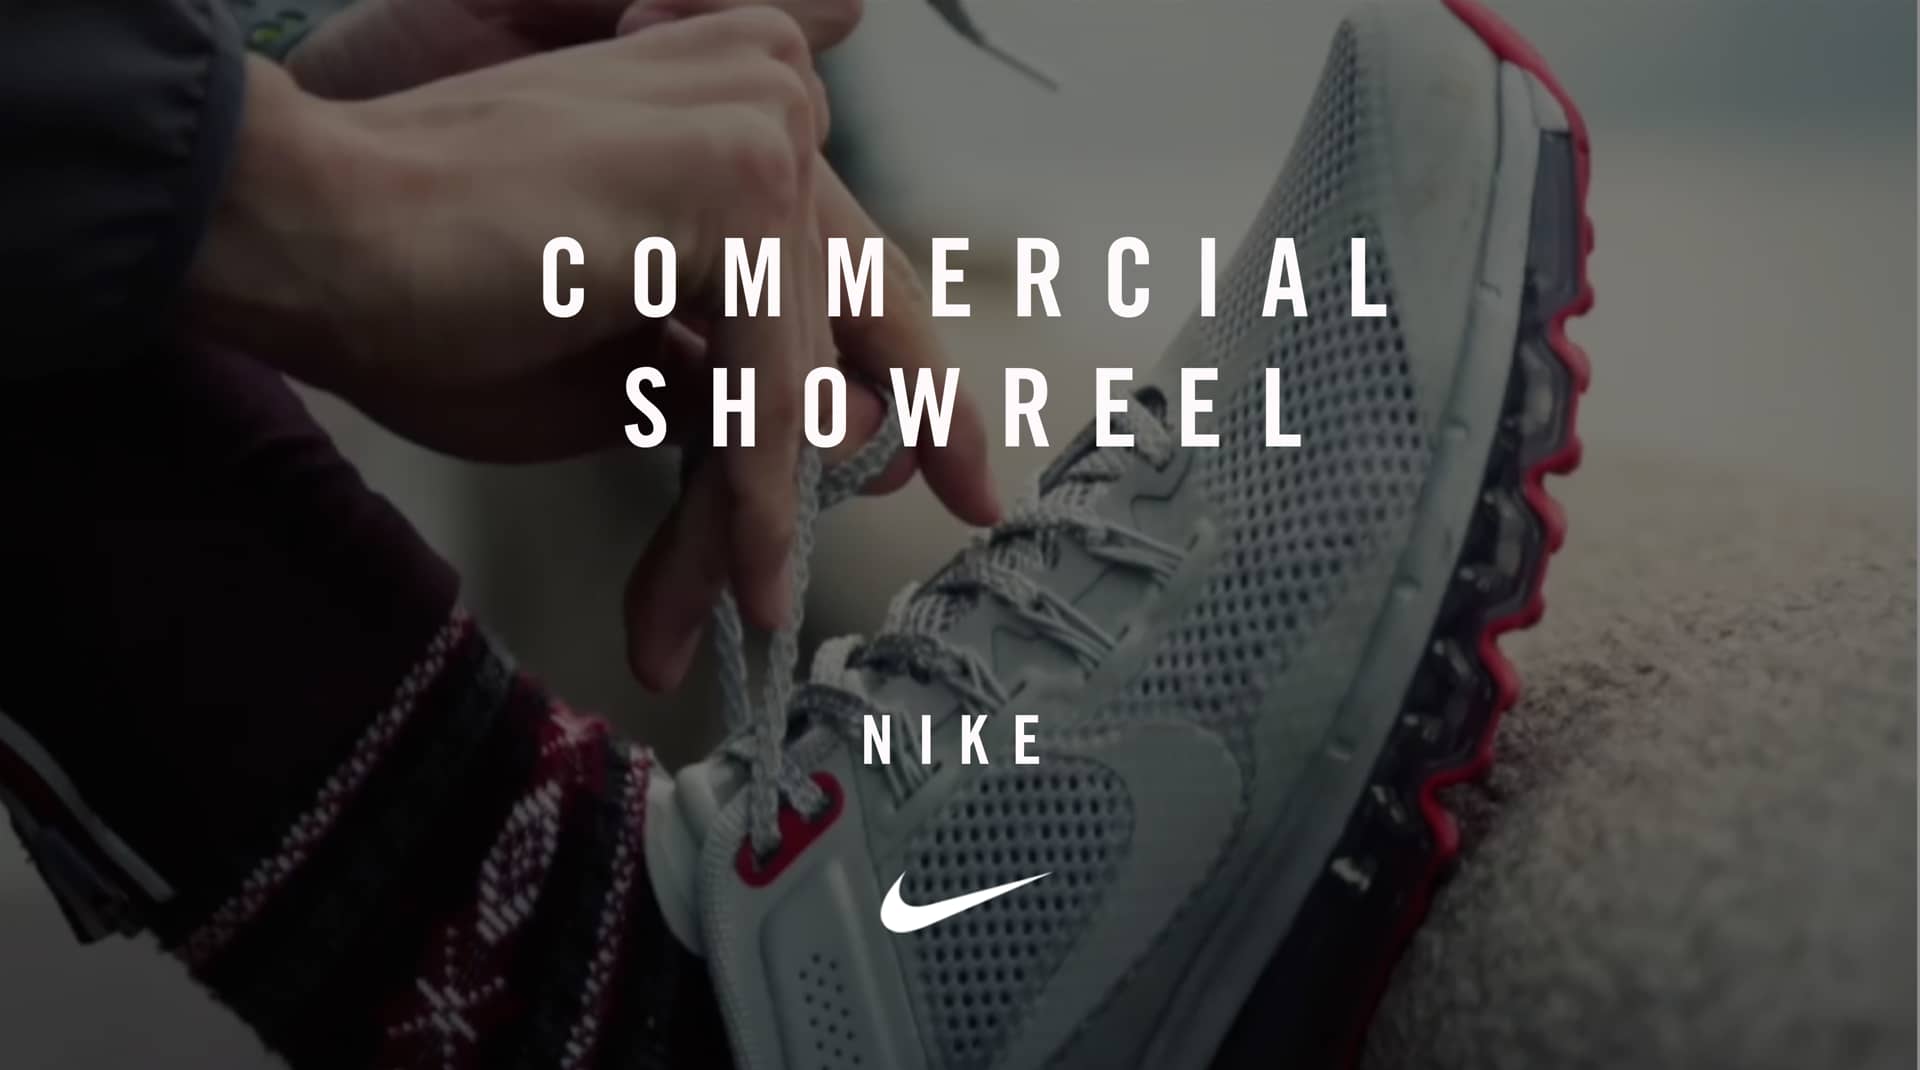 Nike Commercial Documentary showreel on Vimeo